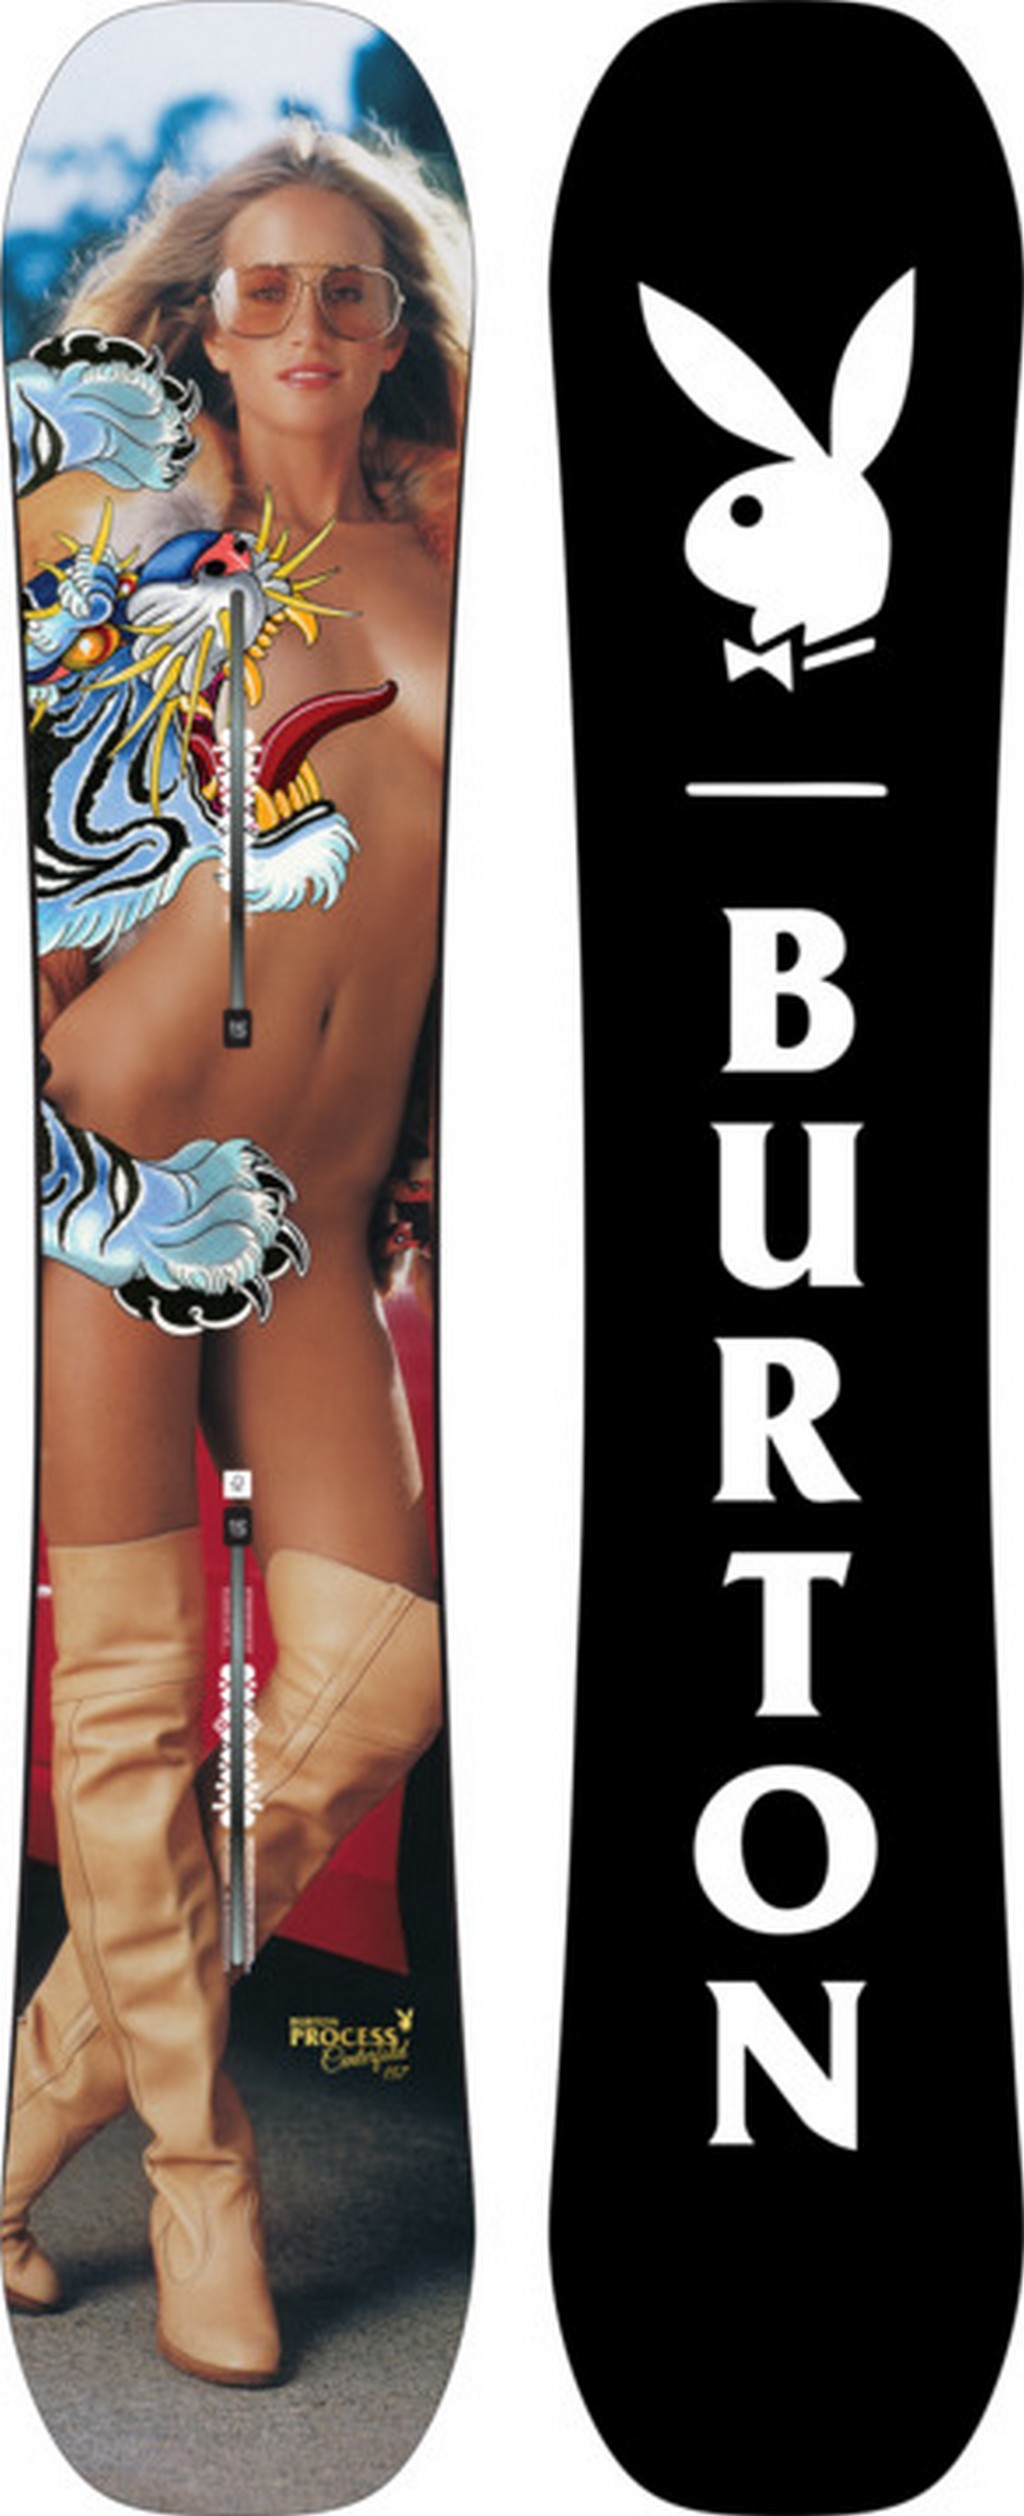 Burton snowboard 2016: la collezione con Playboy e il tattoo artist Chris Nunez